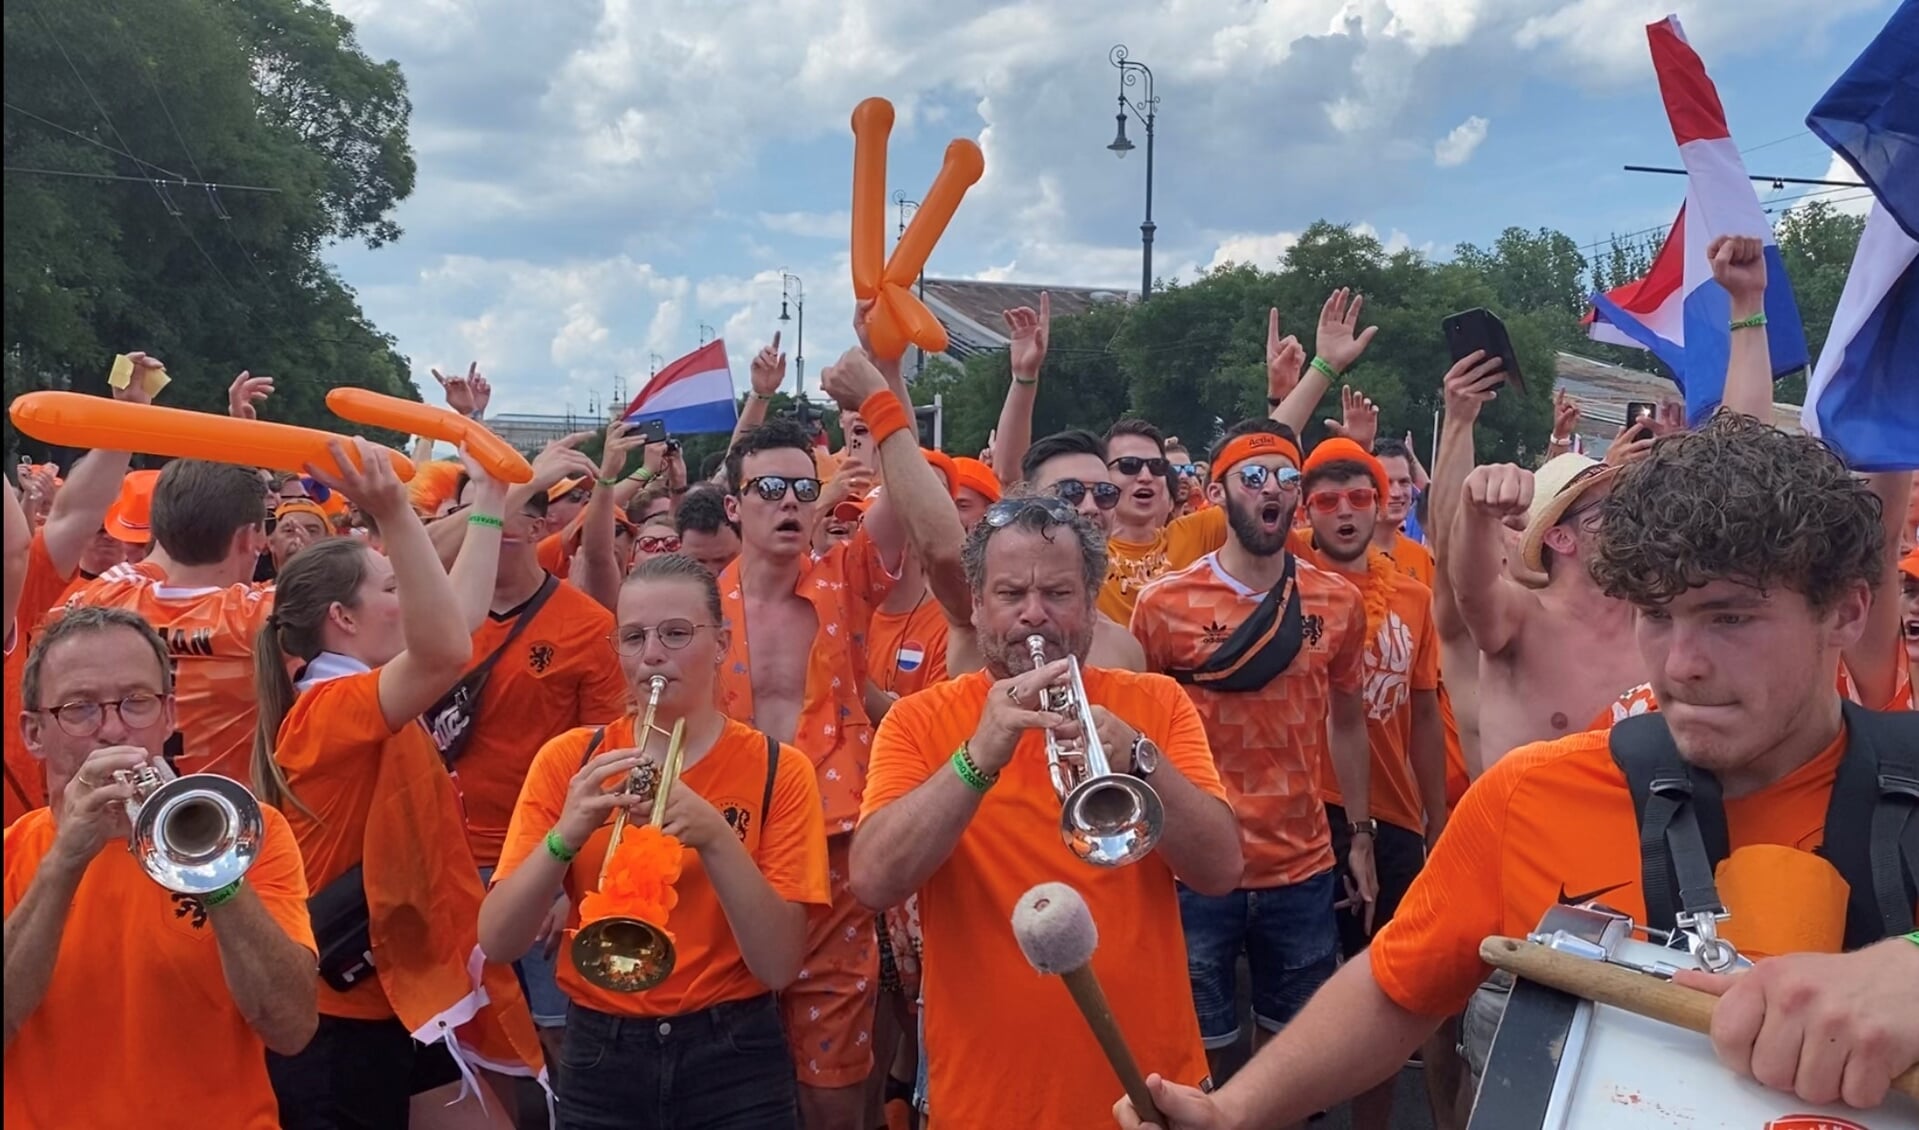 ’t Spul(t) leidt over de fanwalk het Oranjelegioen naar de Ferenc Puskás Aréna in Boedapest. Pal in het midden, blazend op zijn trompet, woordvoerder Rik Verschure. Eigen foto         